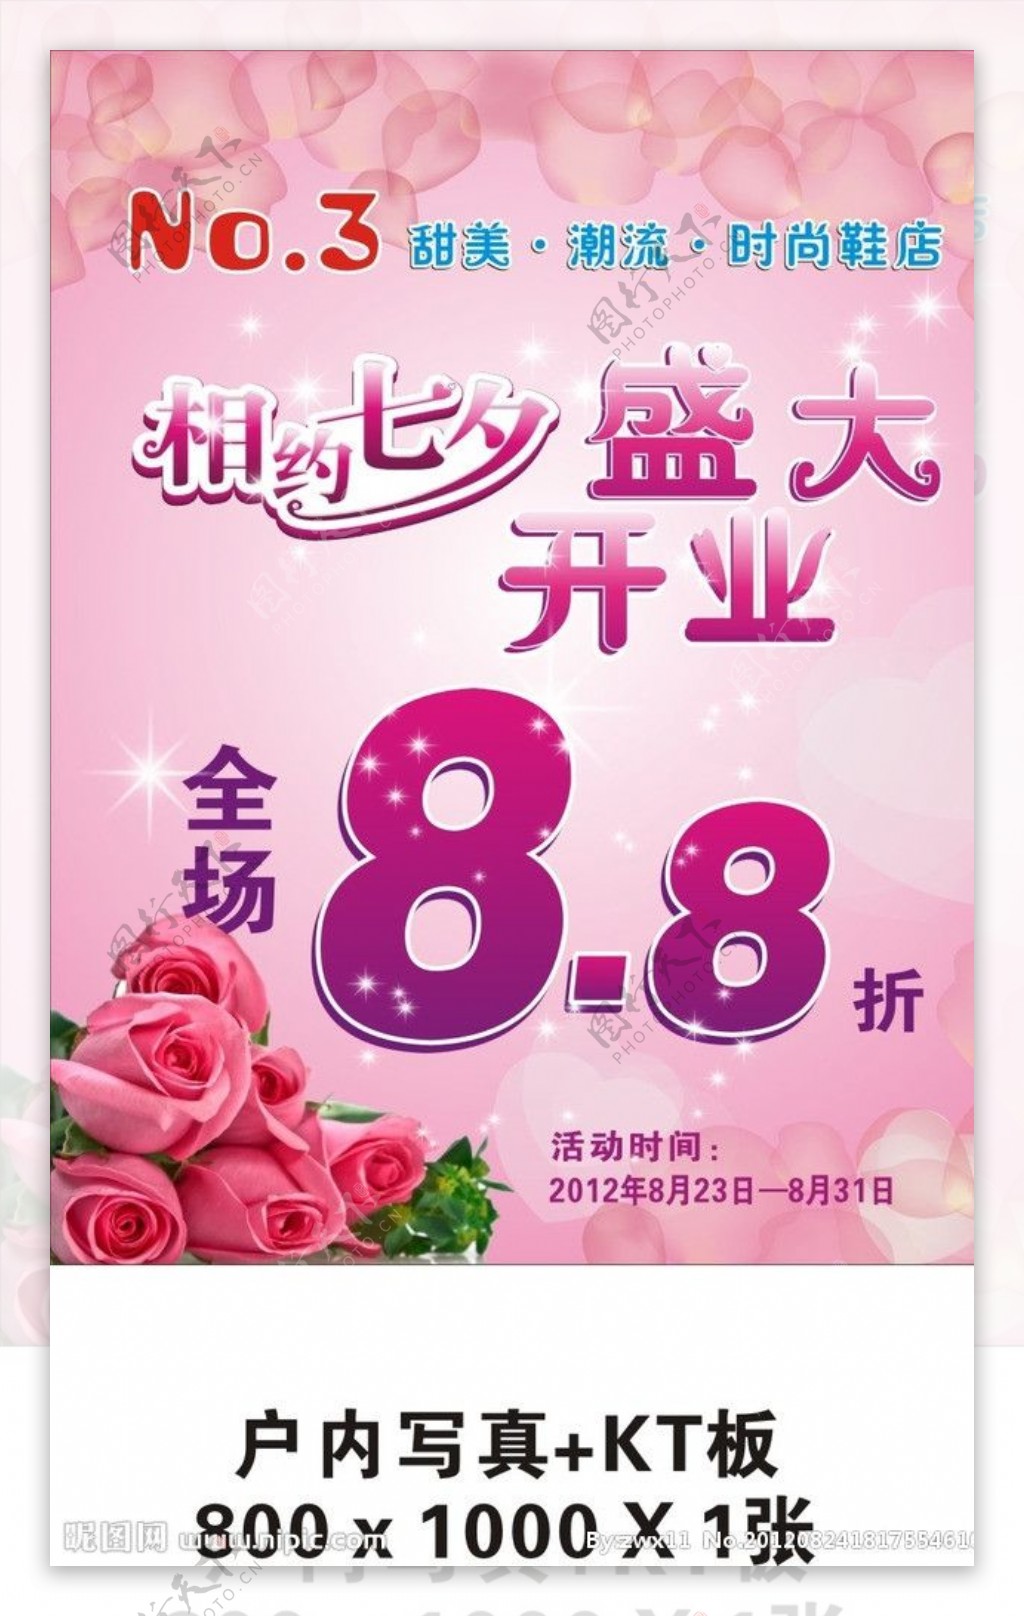 七夕情人节鞋店开业海报图片